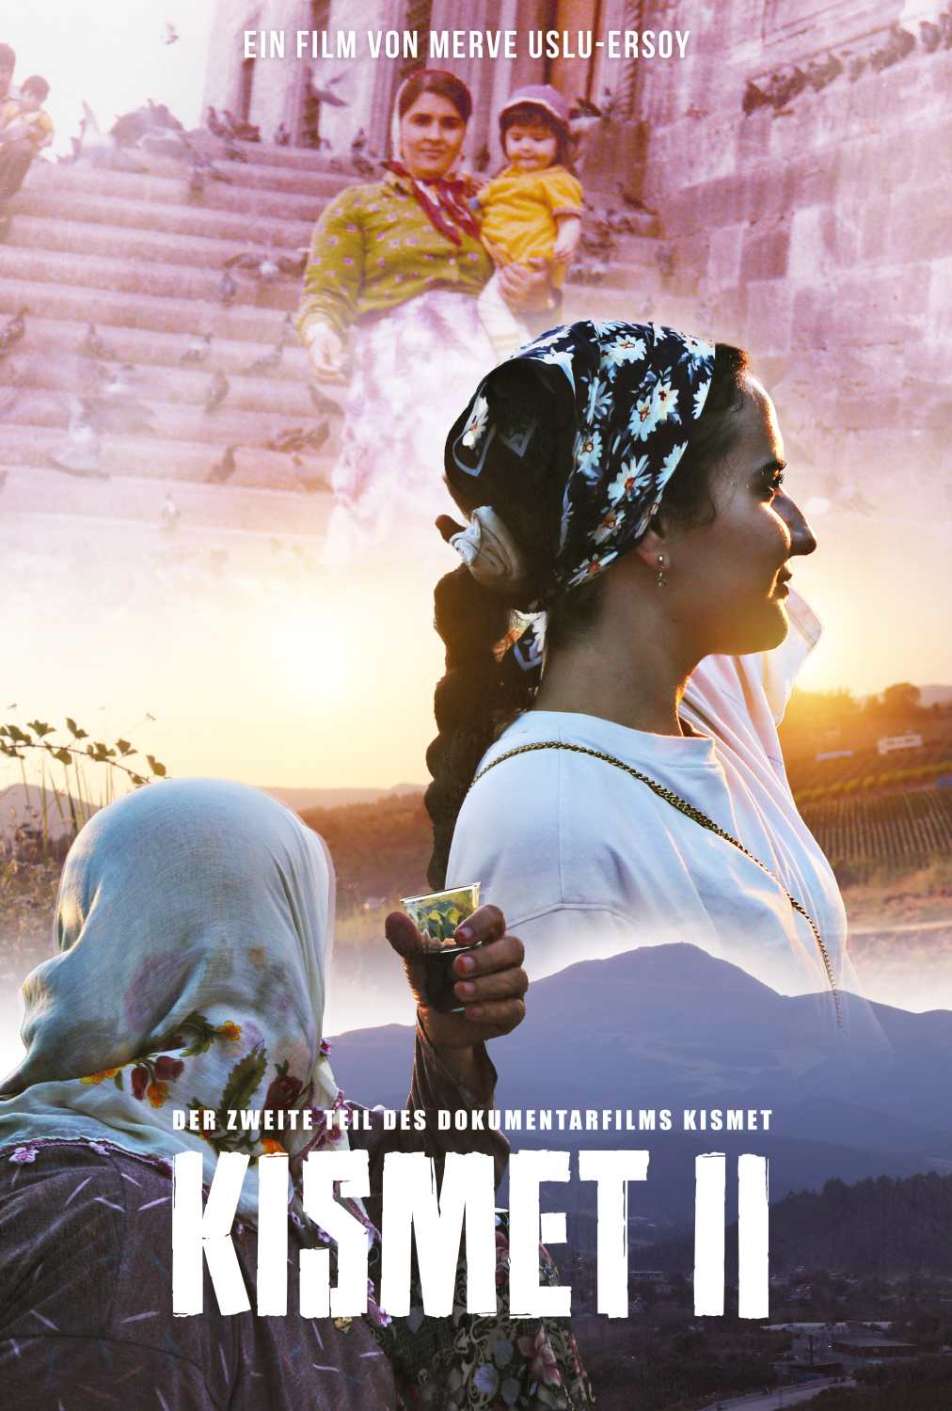 farbiges Filmplakat, das den Film "Kismet II" ankündigt und mehrere Frauen zeigt